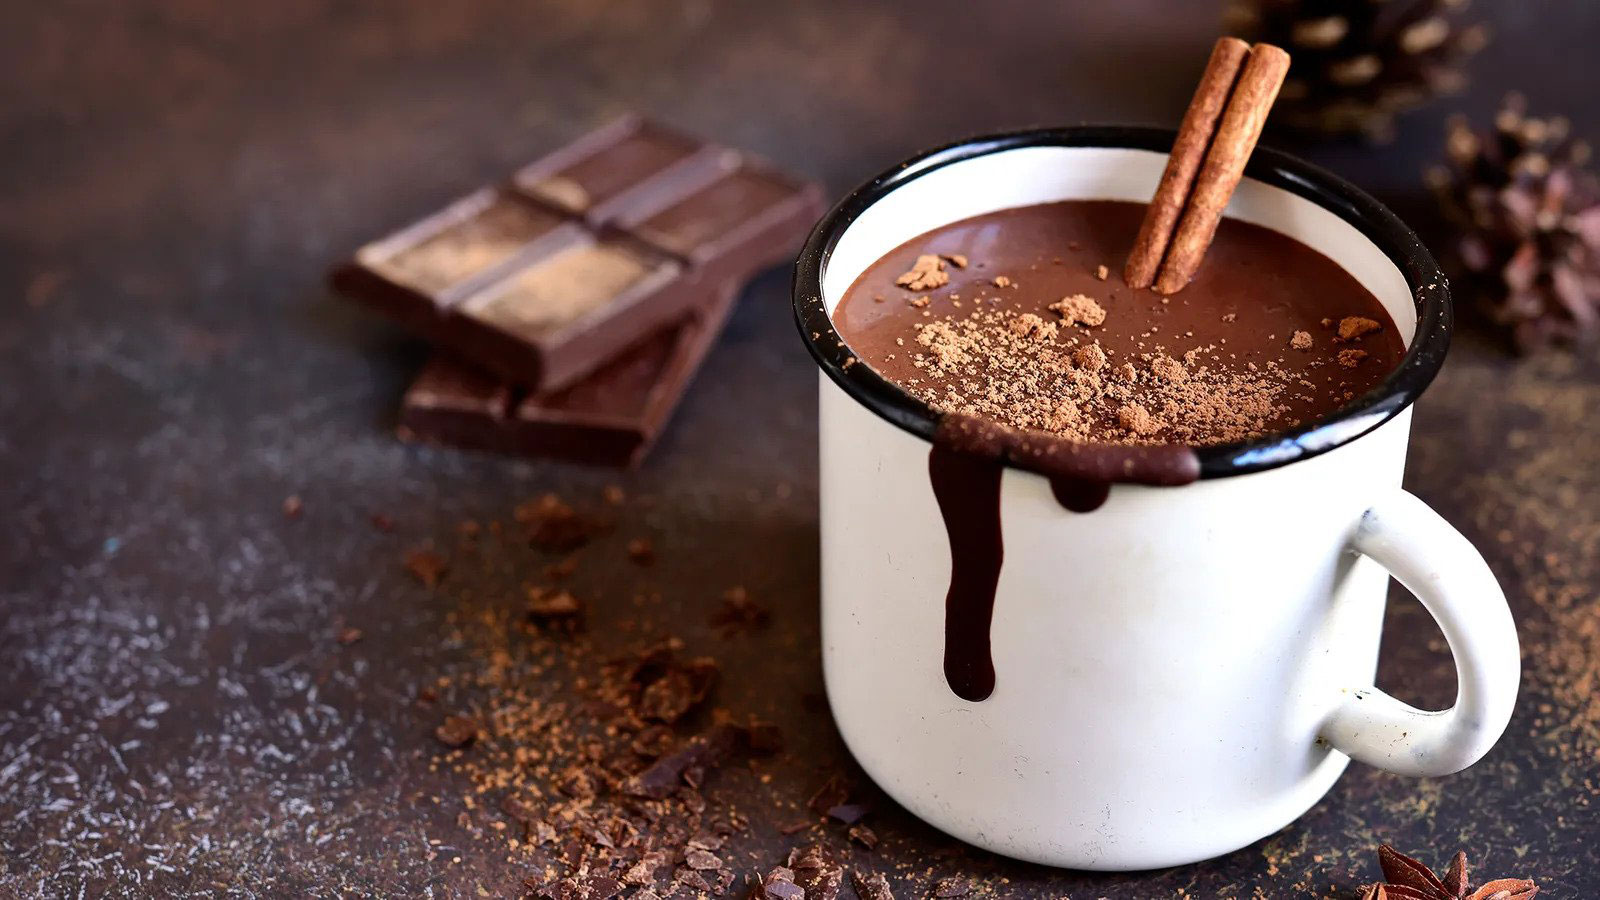 آیا شکلات تلخ واقعاً برای بدن مفید است؟